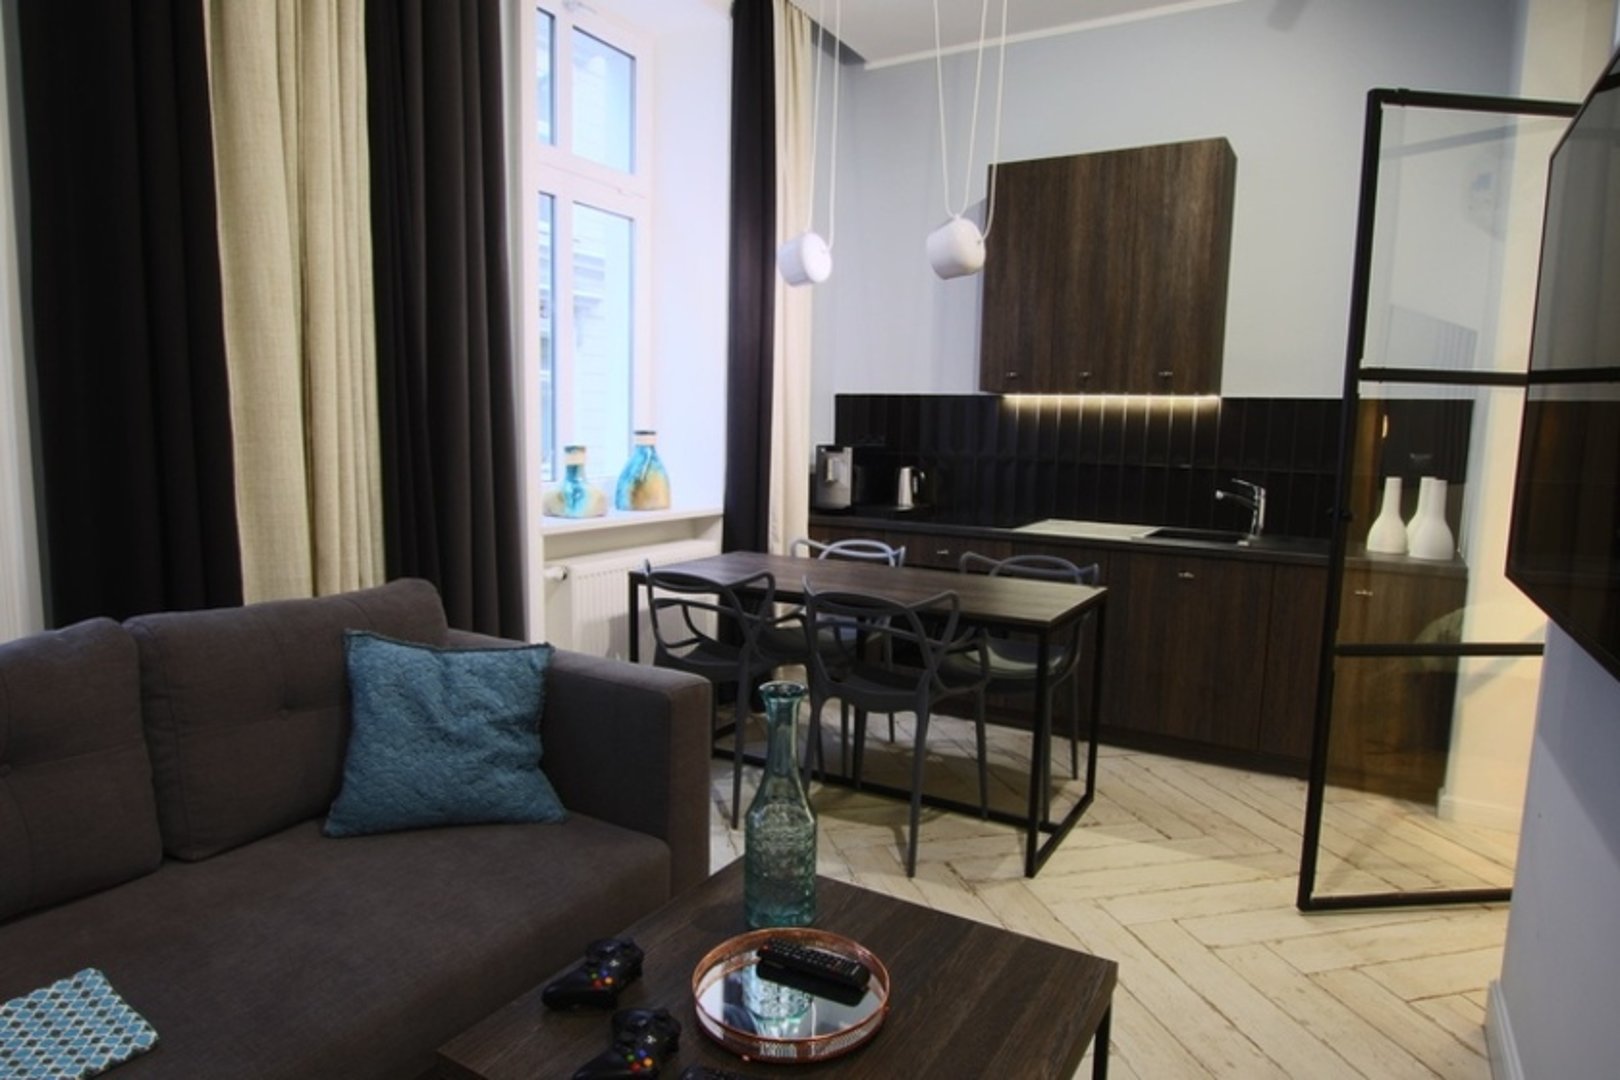 Najlepsze apartamenty w Bydgoszczy - booking-bydgoszcz Apartament Batorego 2/4A, Apartament Batorego 2/4B, Apartament Batorego 2/4C